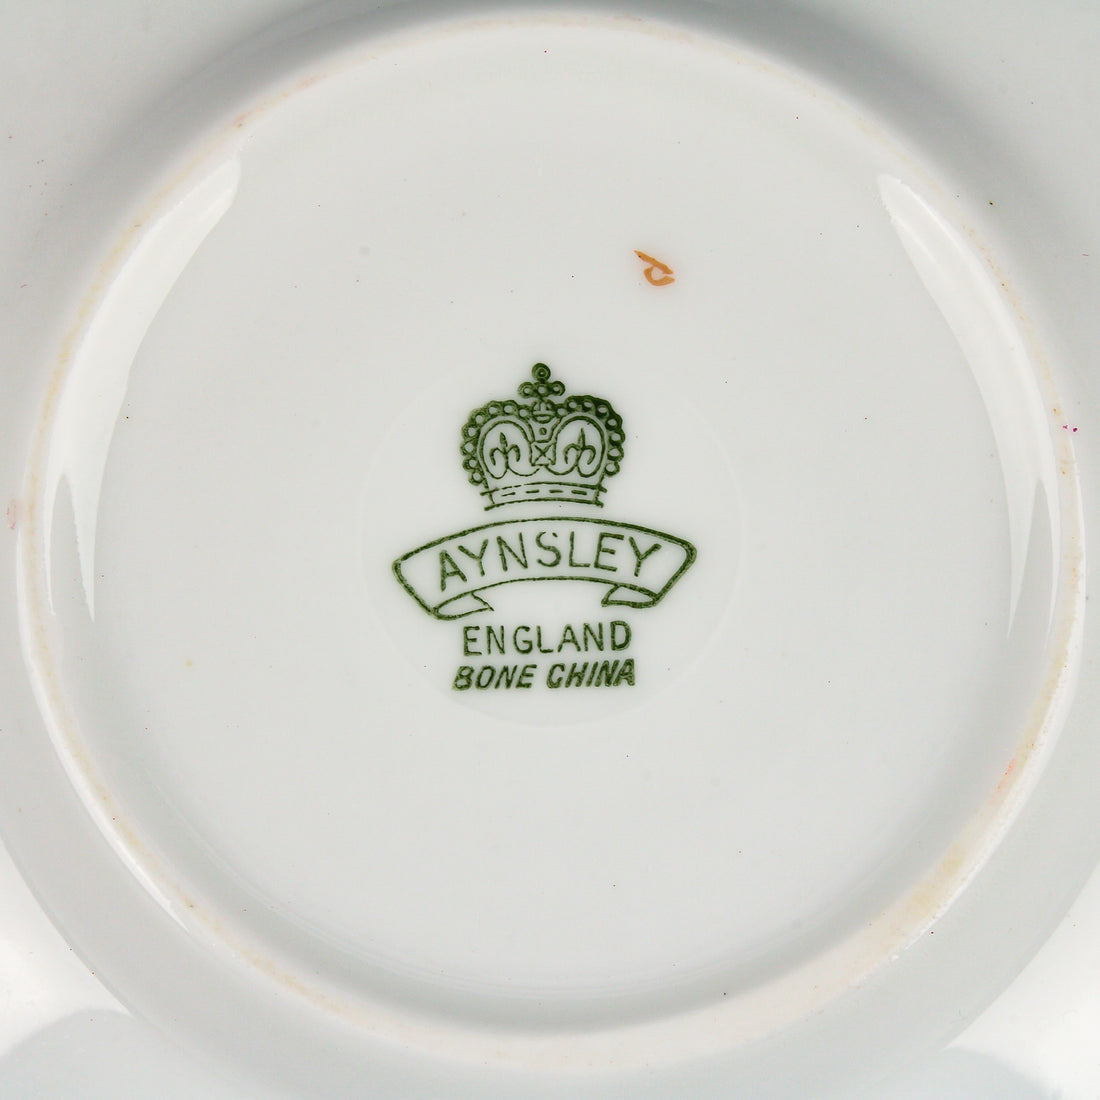 AYNSLEY Durham Maroon Demitasse Cups & Saucers - Set of 7